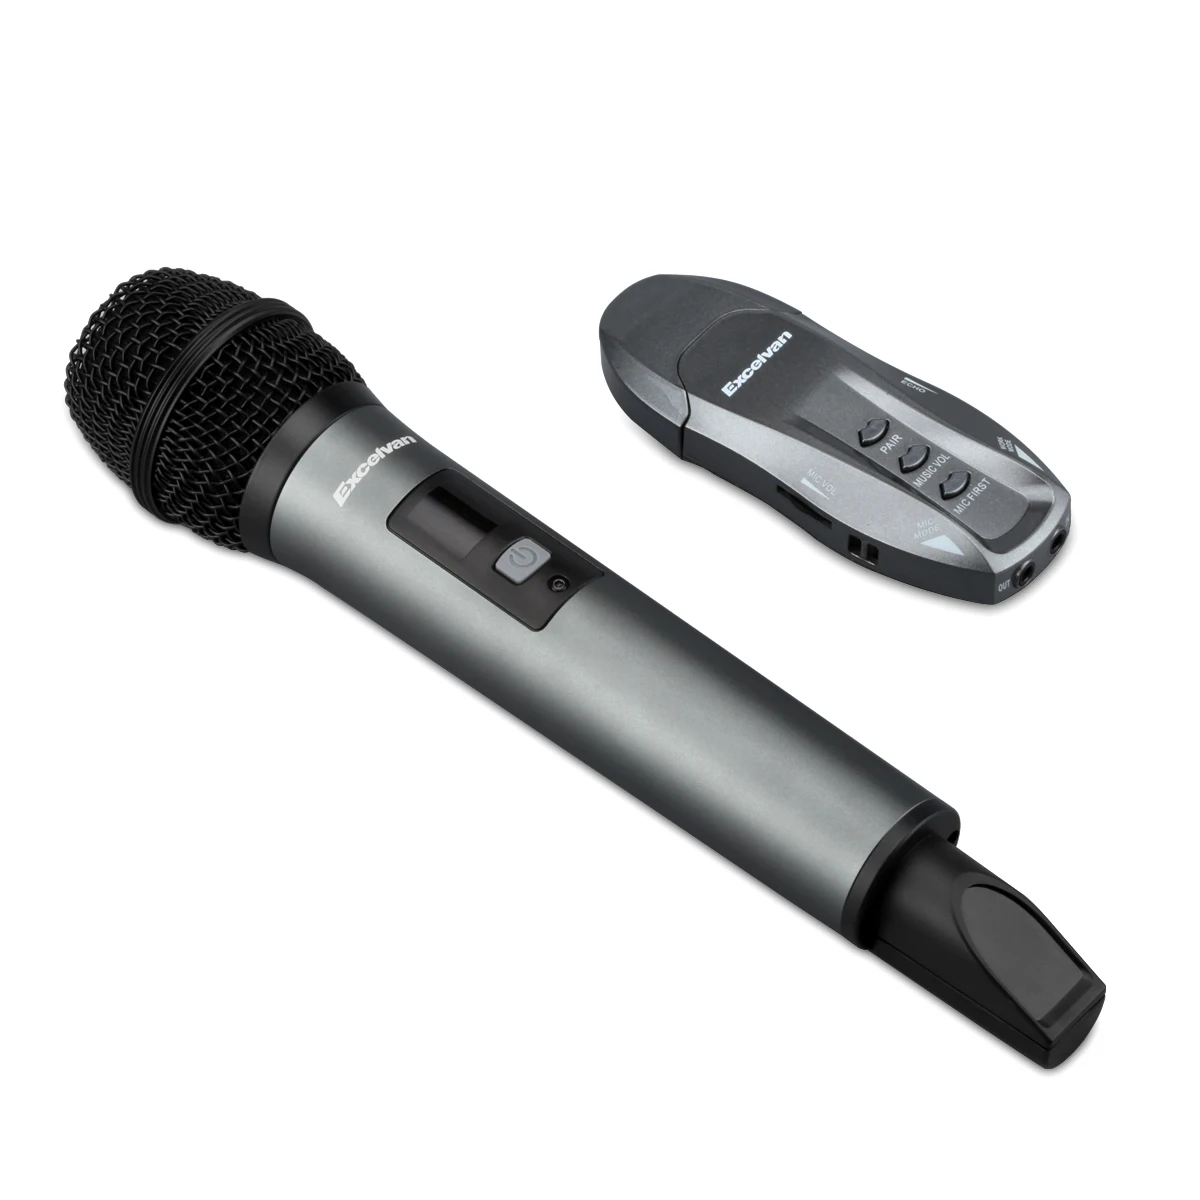 Excelvan K18V беспроводной Bluetooth микрофон беспроводной с поддержкой рецепторов приложение для домашней развлекательной конференции